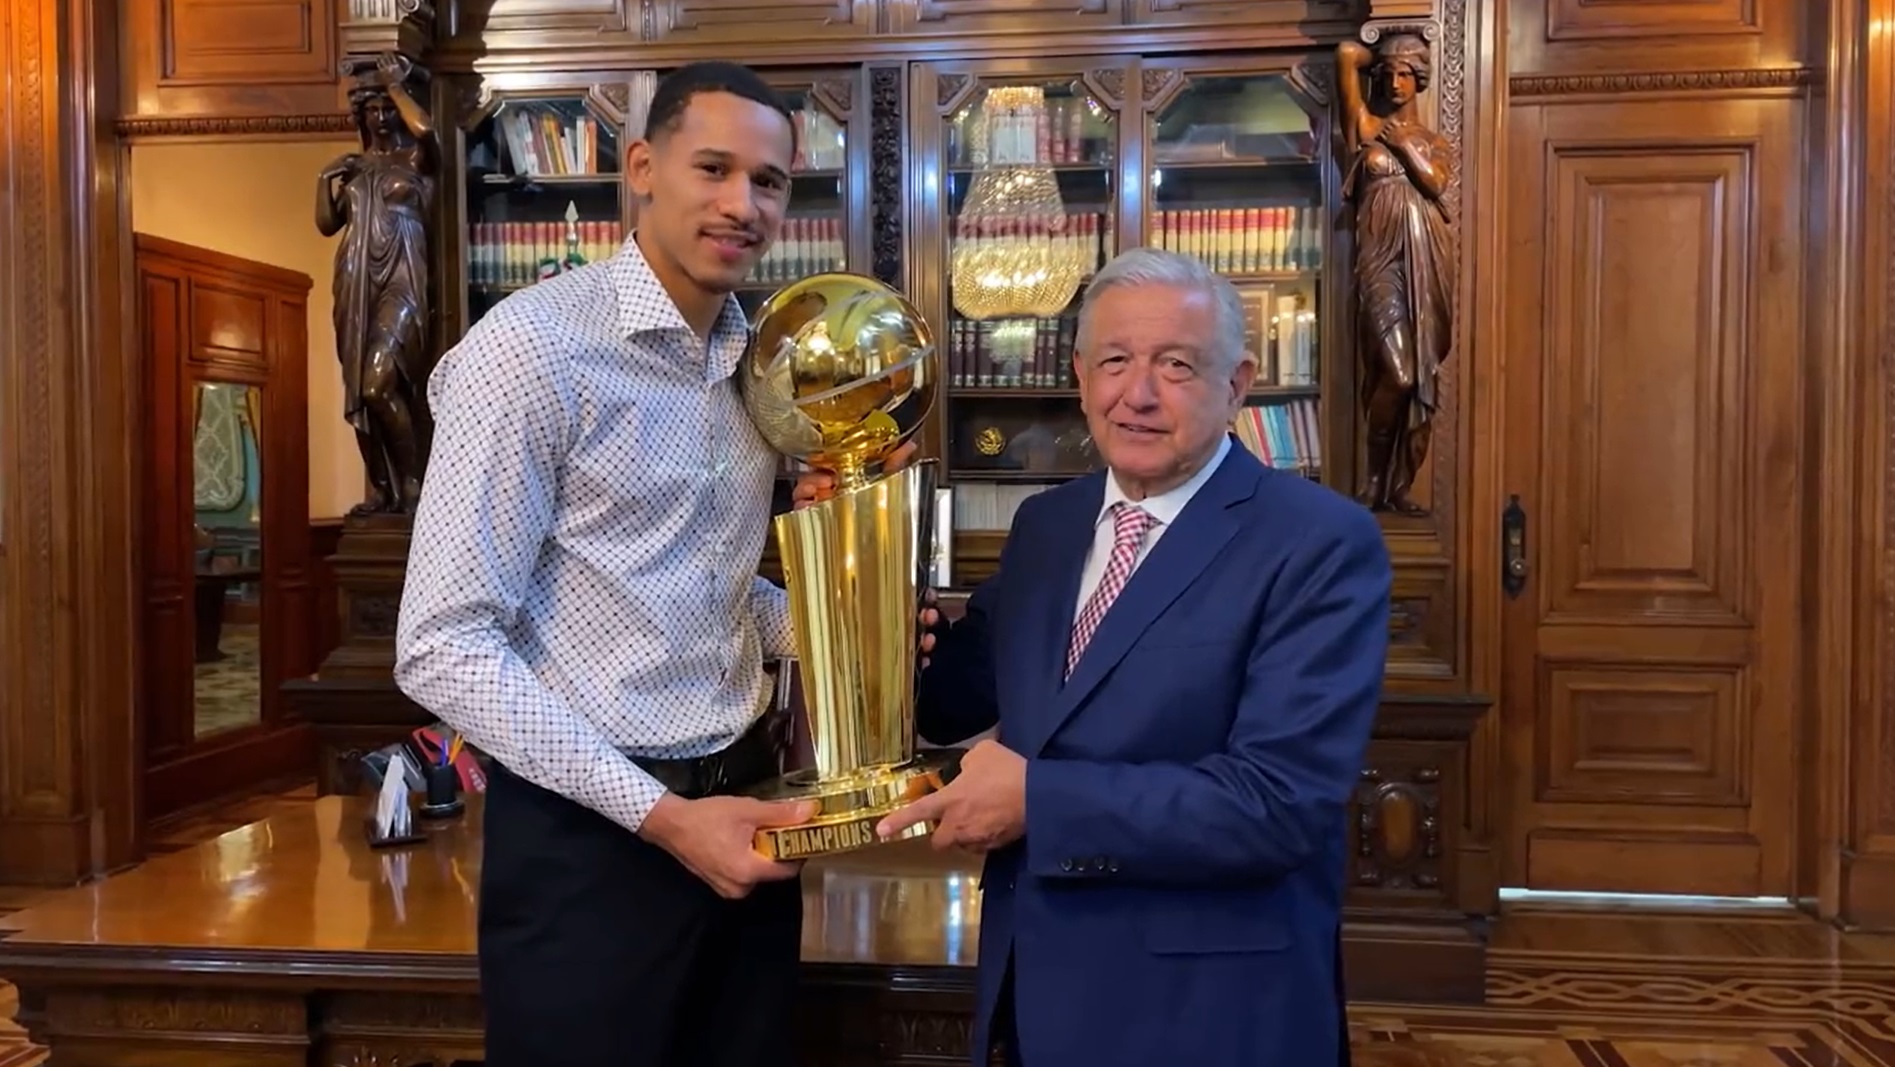 Juan Toscano visitó a AMLO en Palacio Nacional tras ser campeón de la NBA  (Foto: Twitter/@lopezobrador_)